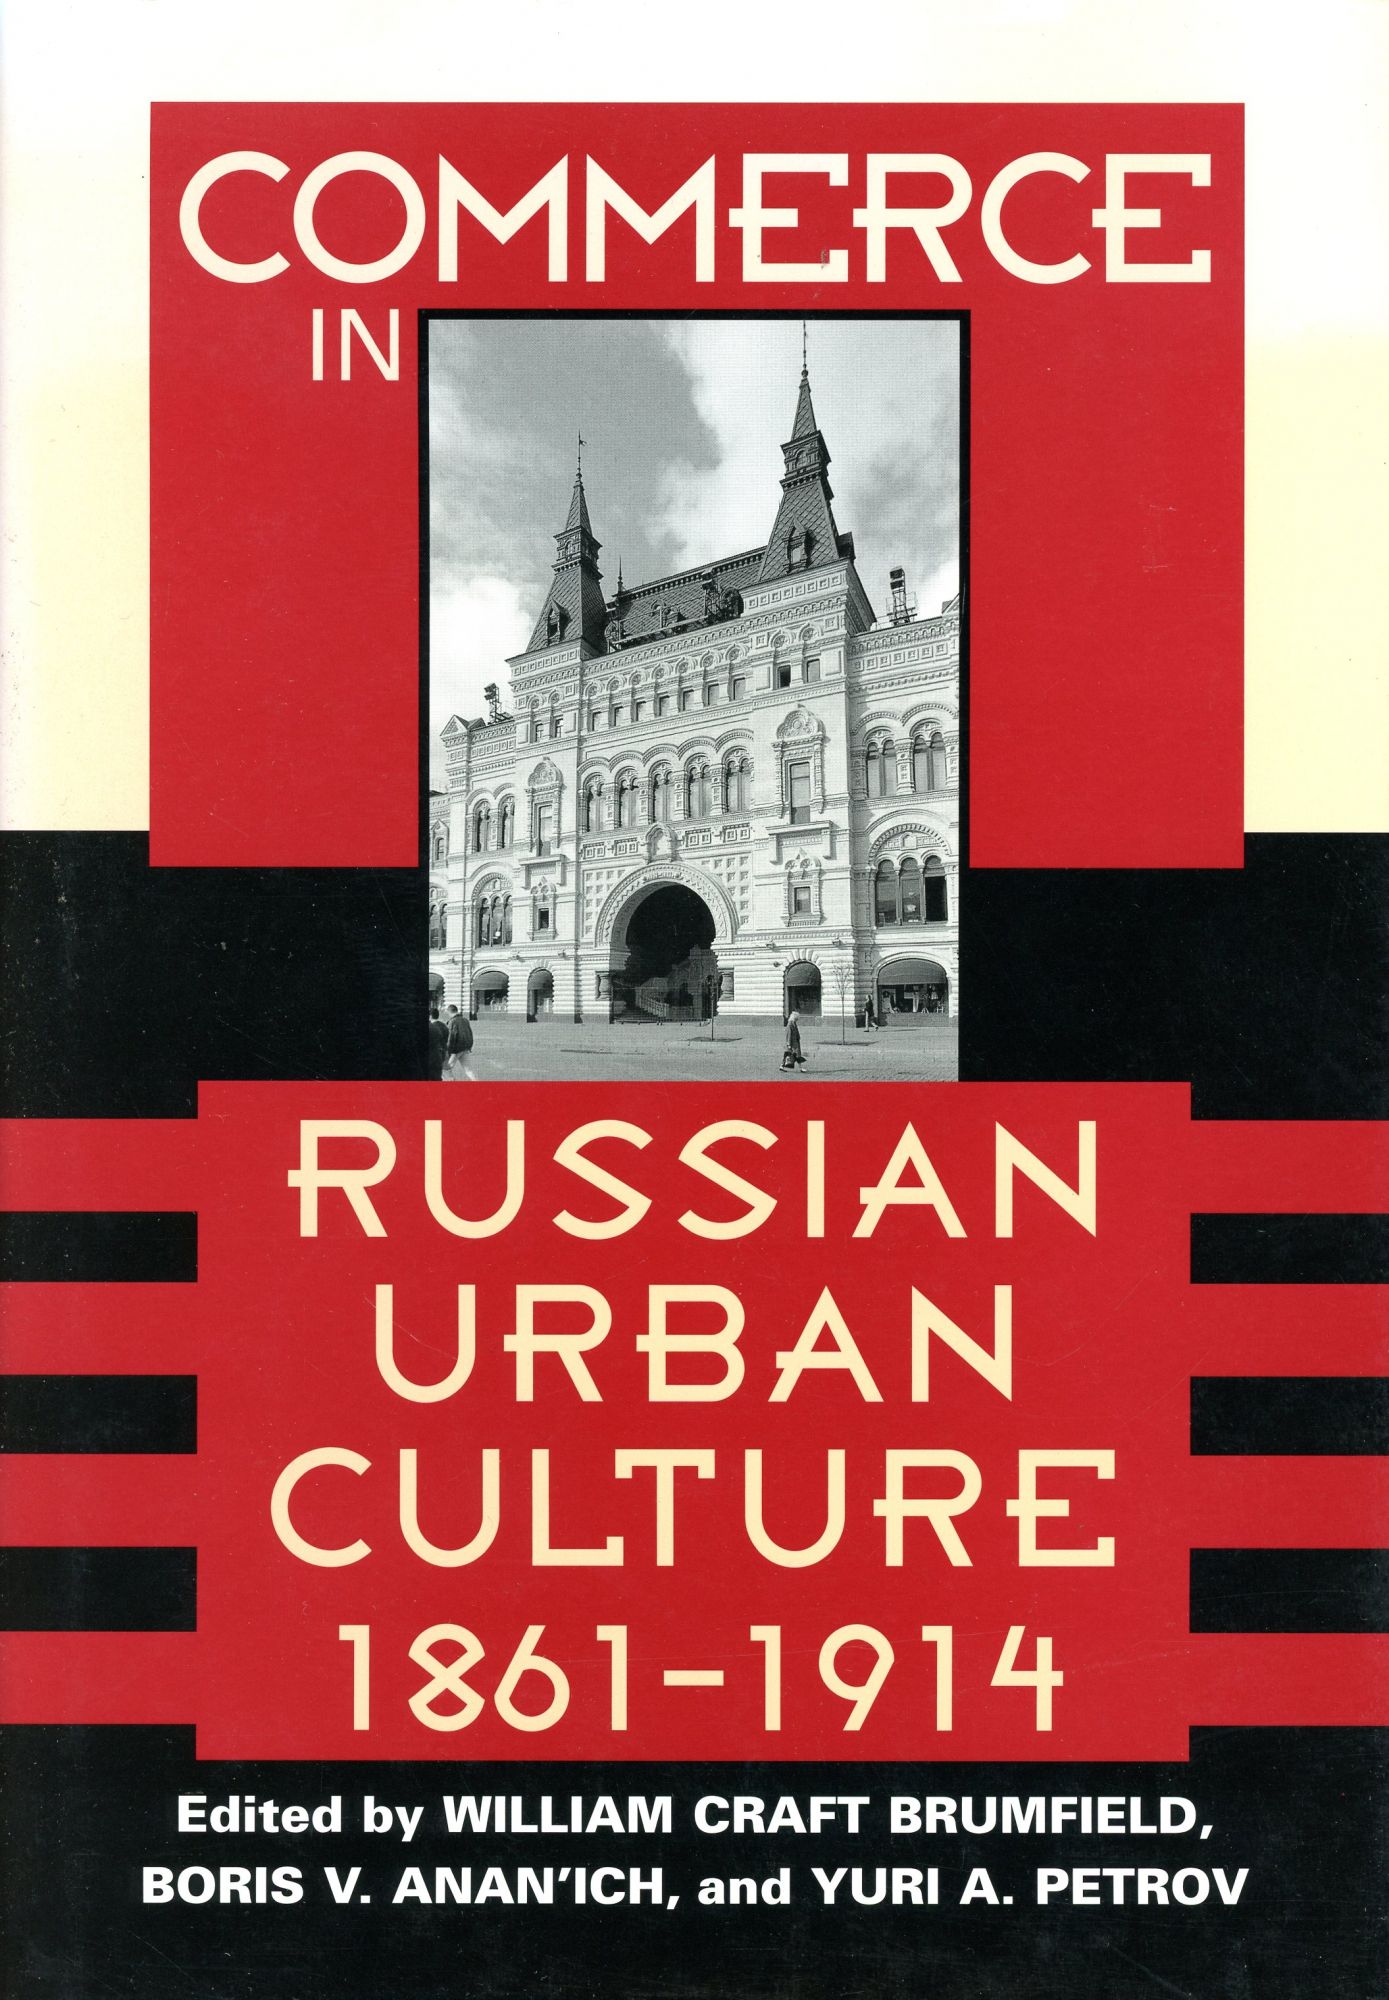 Commerce in Russian Urban Culture, 1861-1914 - BRUMFIELD, William Craft, Boris V Anan'ich, and Yuri A. Petrov, Editor